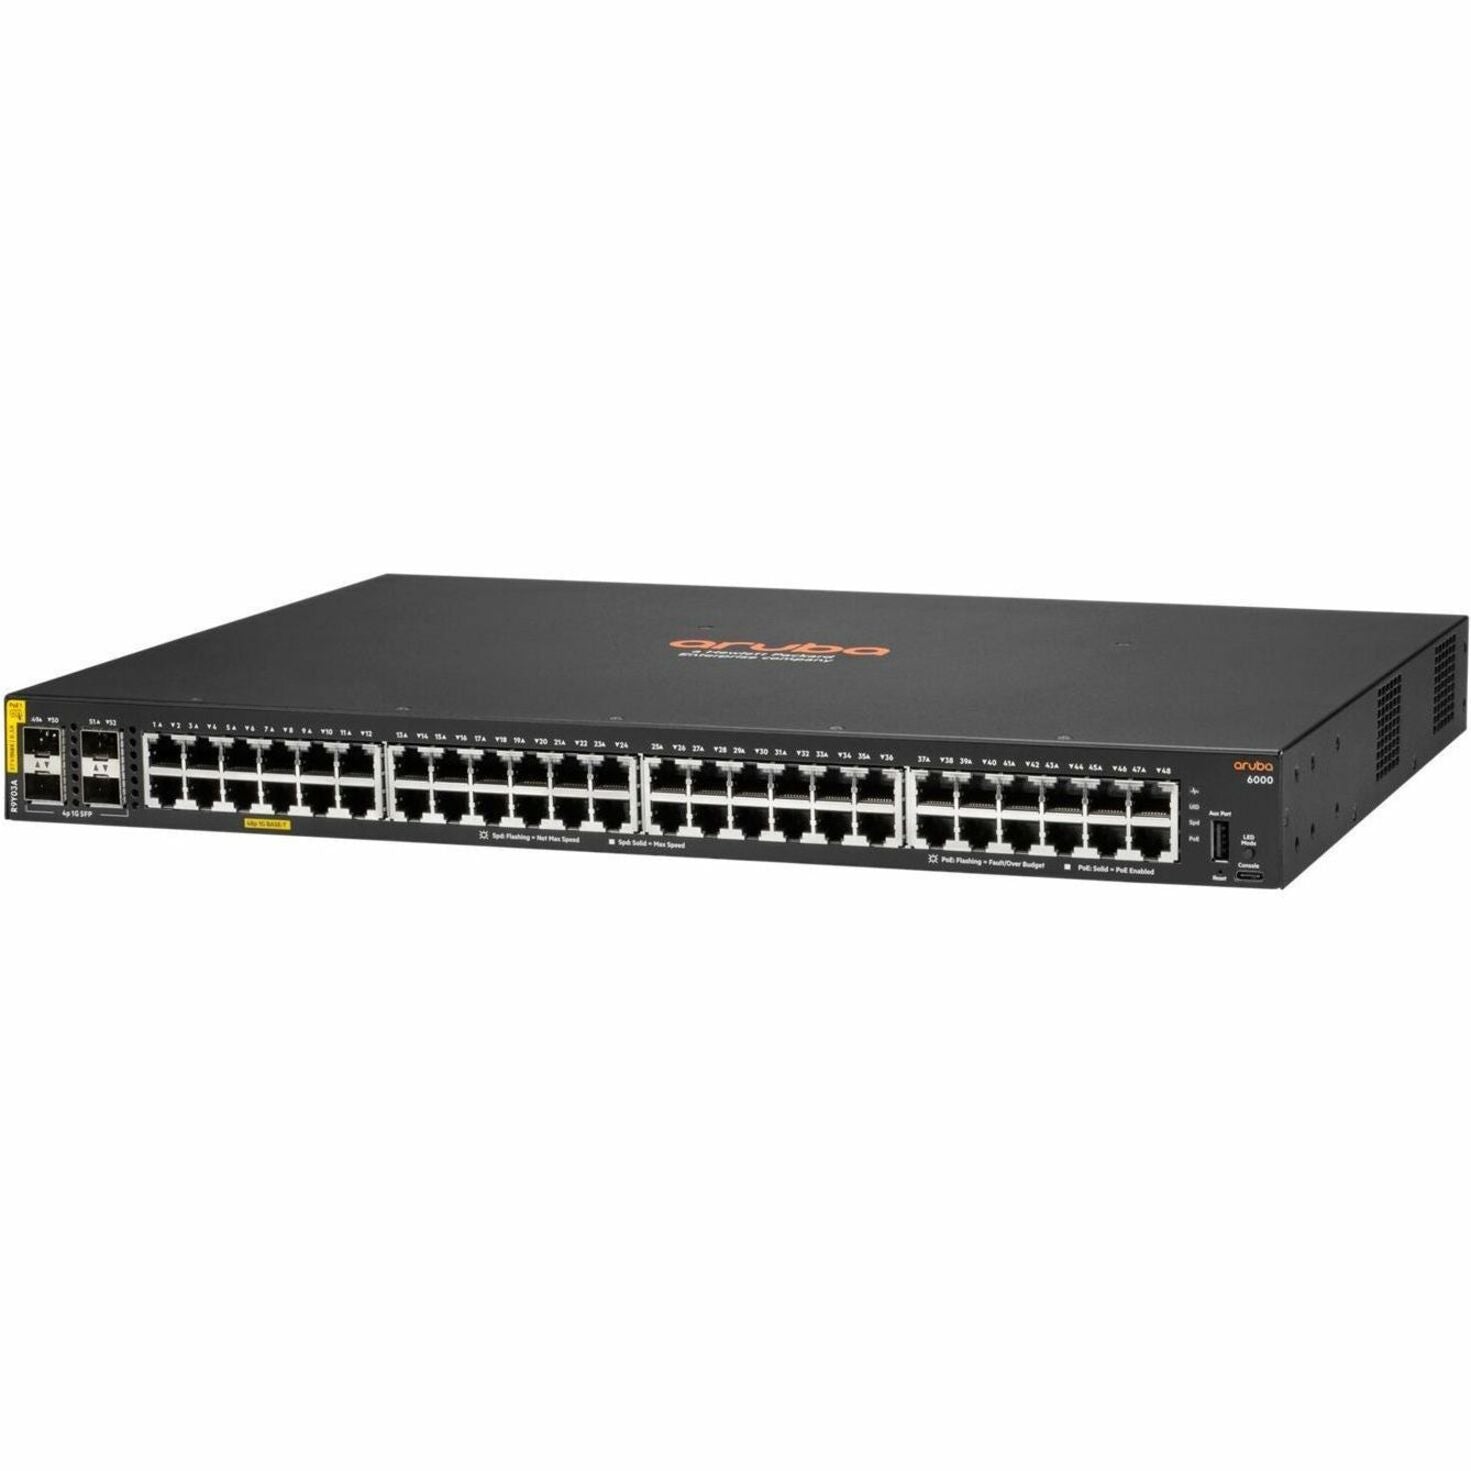 Aruba 6000 48G CL4 4SFP 740W Switch Business Ethernet Switch Aruba 6000 48G CL4 4SFP 740W Switch Business Ethernet Switch